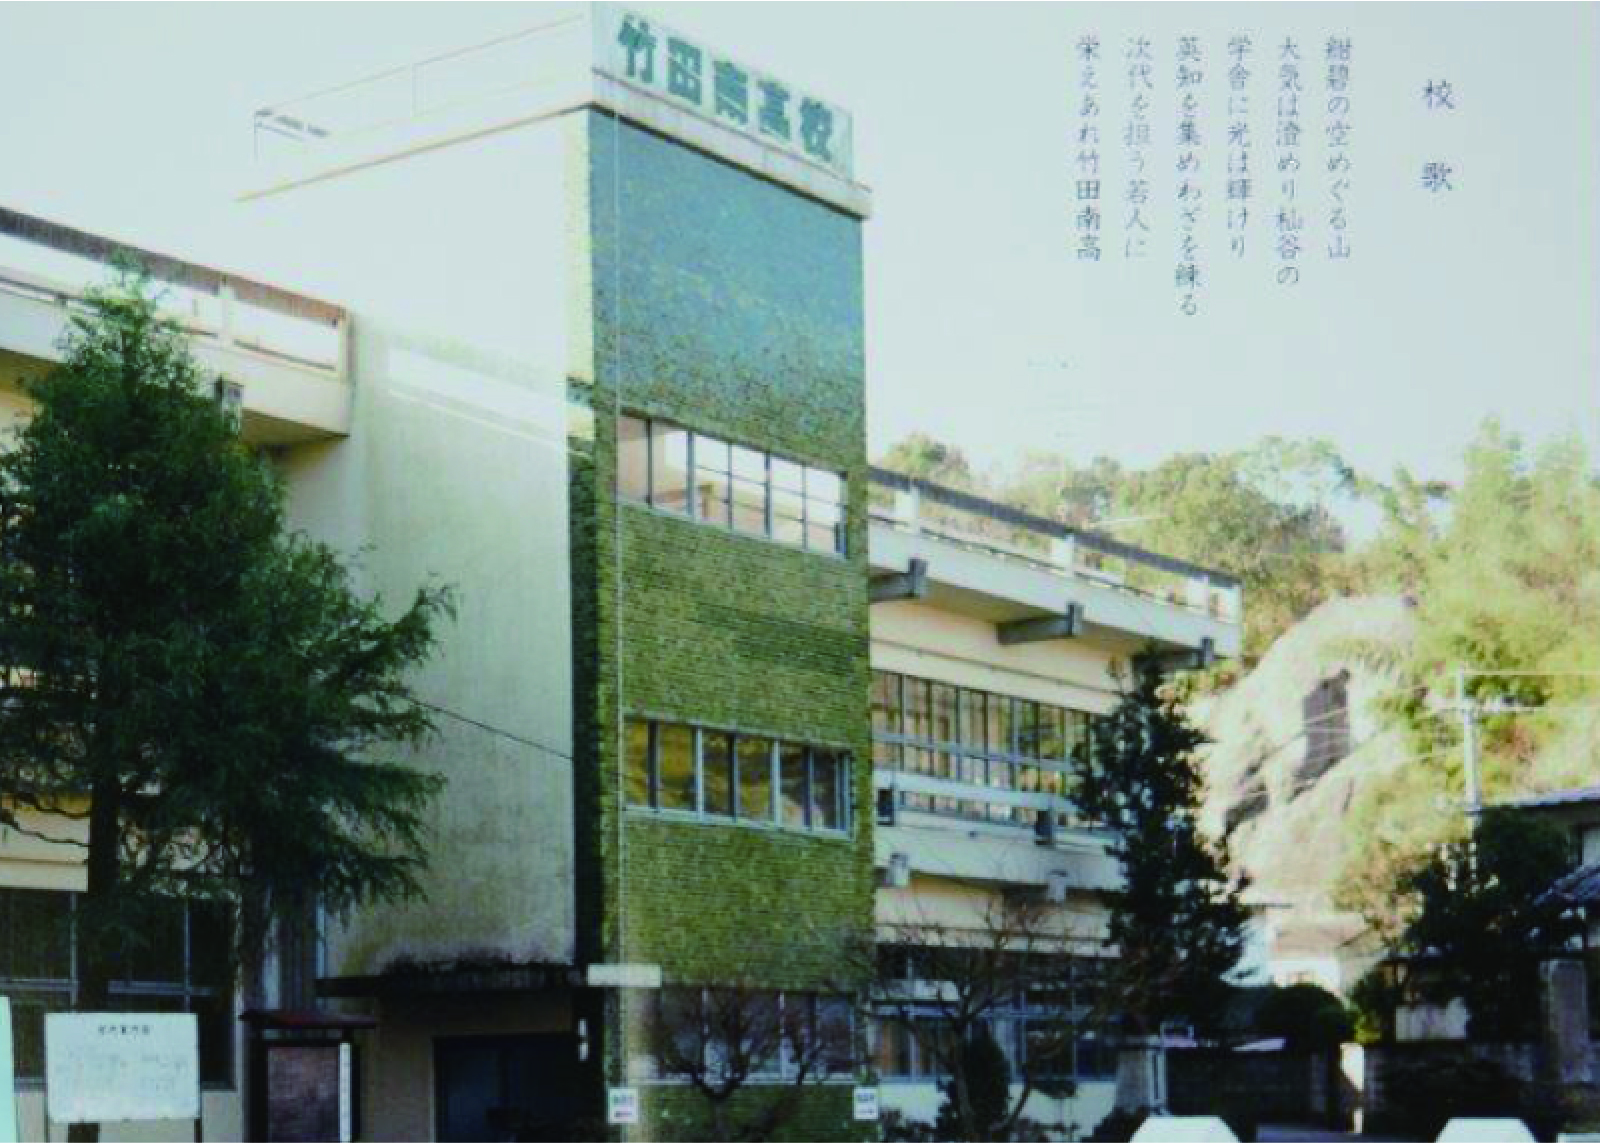 稲葉学園高等学校は、2016年に創立100周年を迎えました。